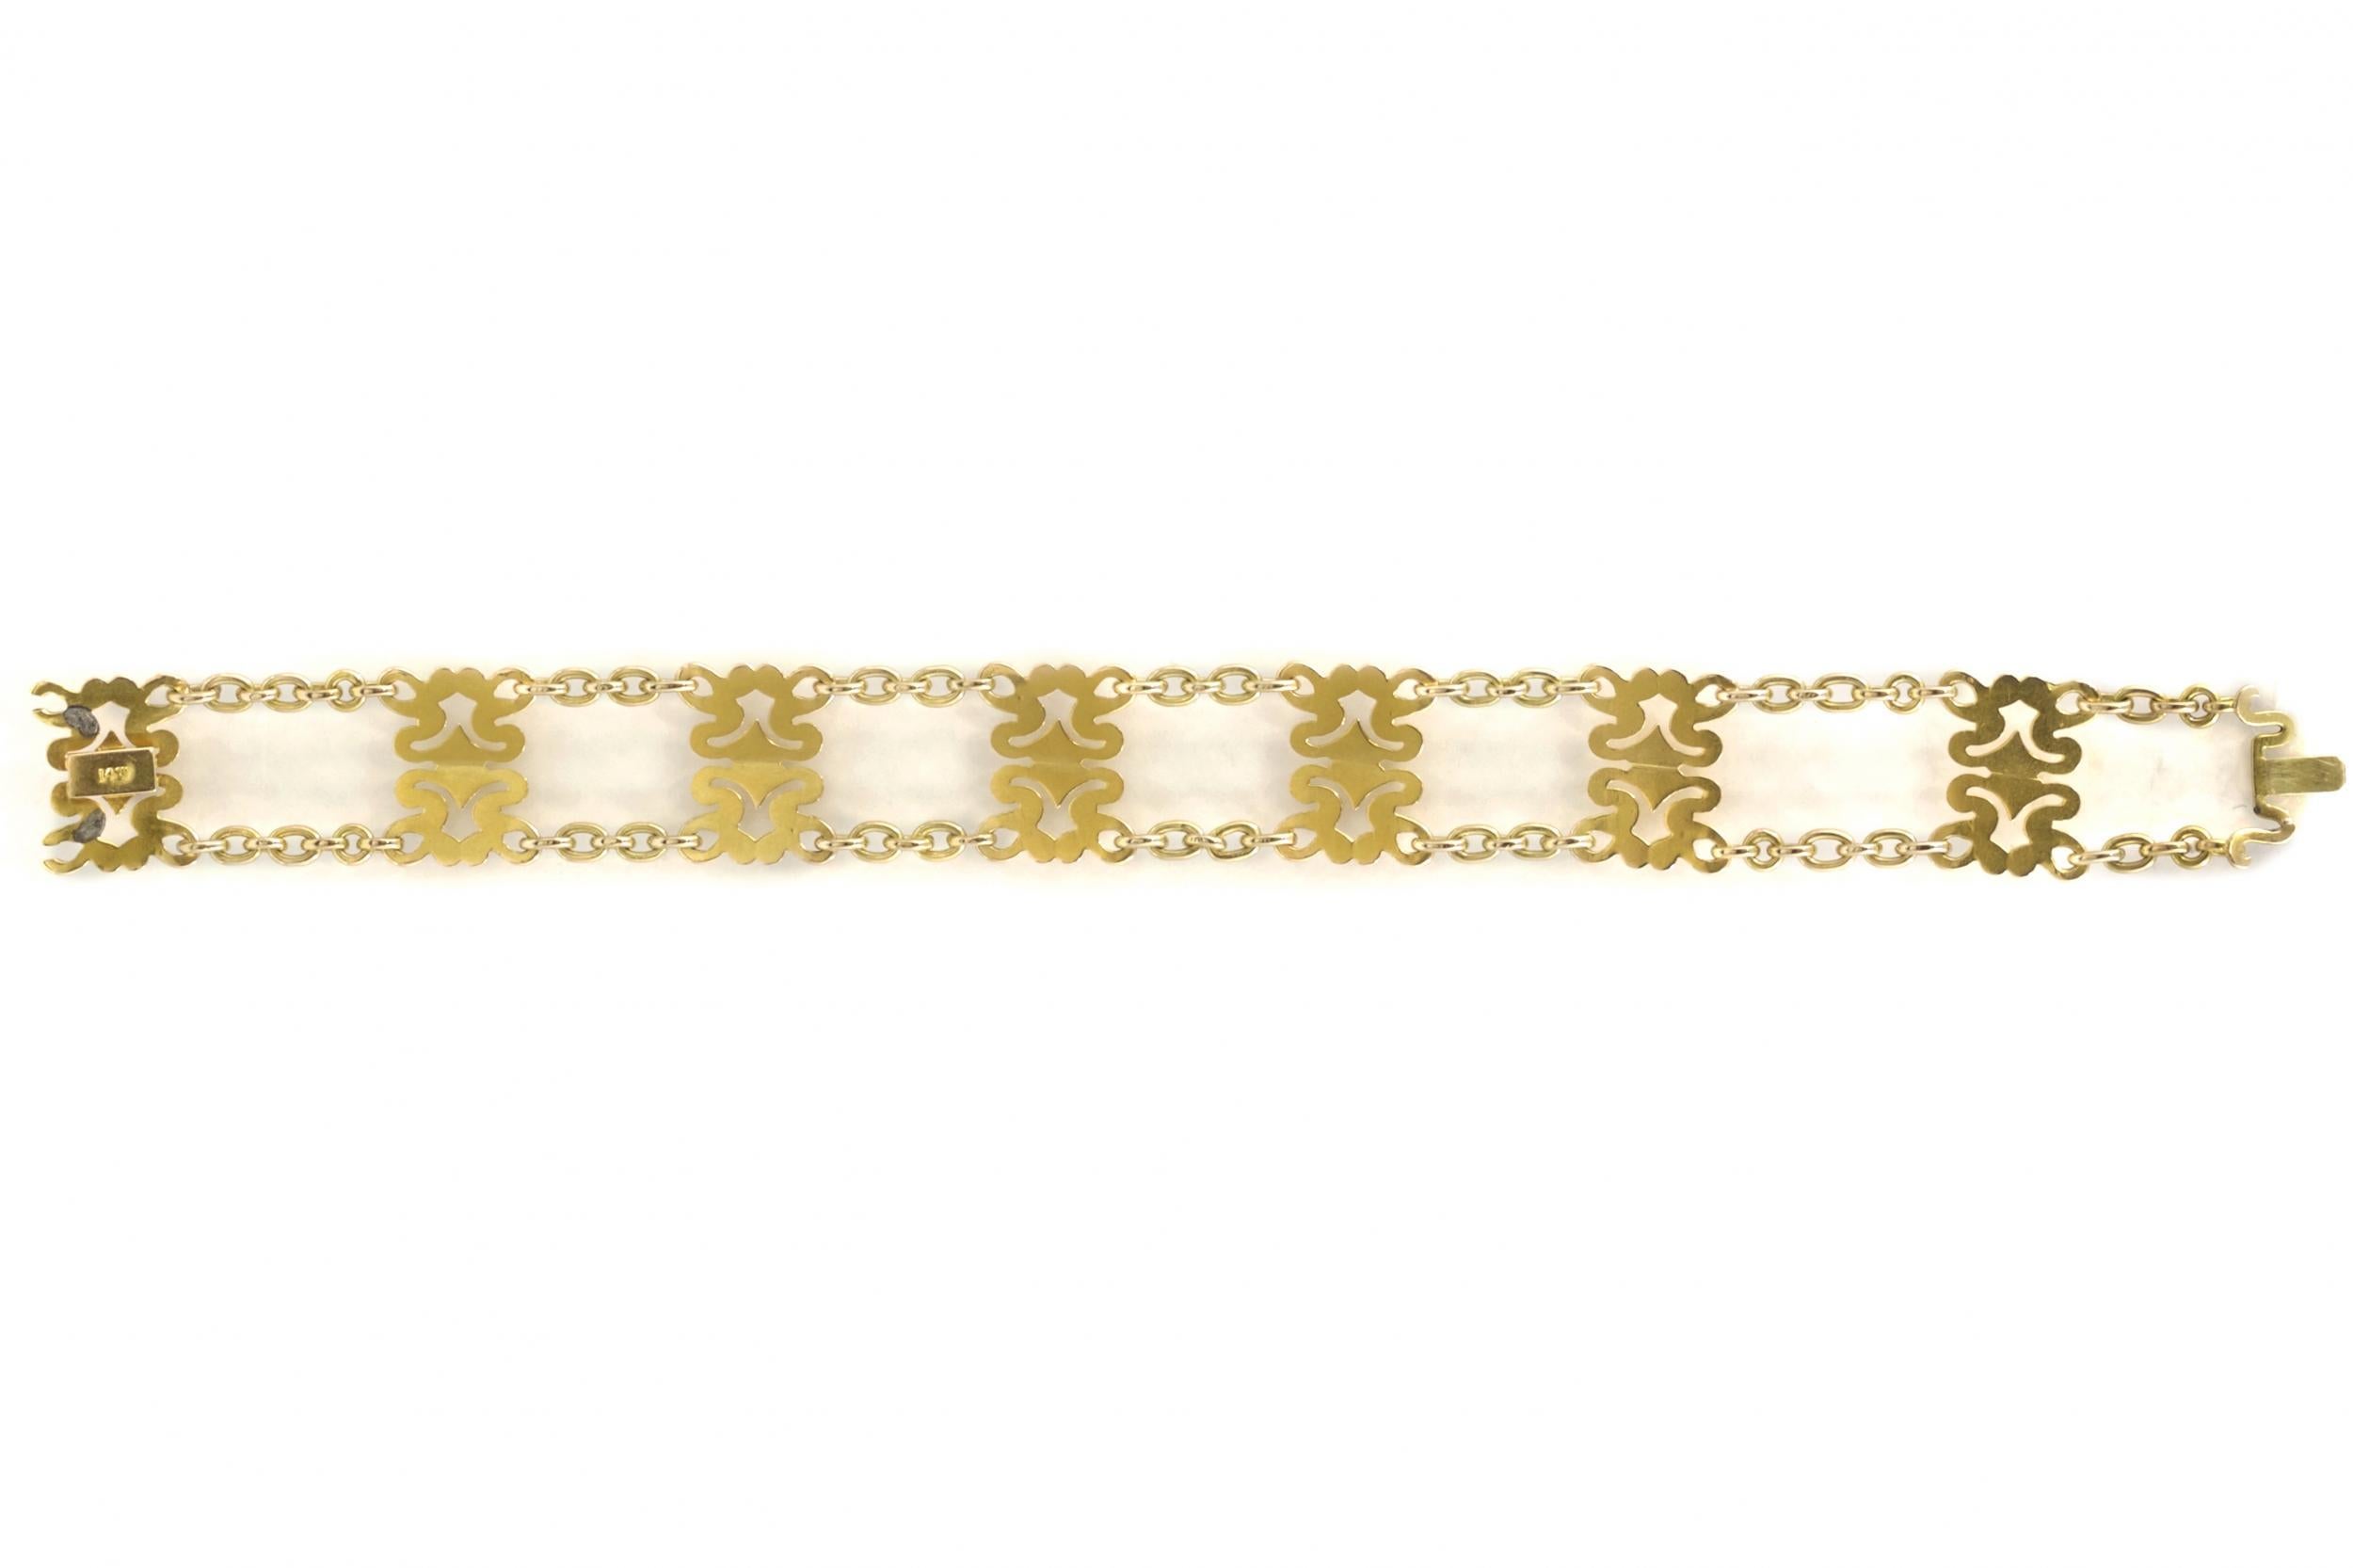 Art Nouveau 14K Yellow Gold Strap Bracelet by Sloan & Co. 1